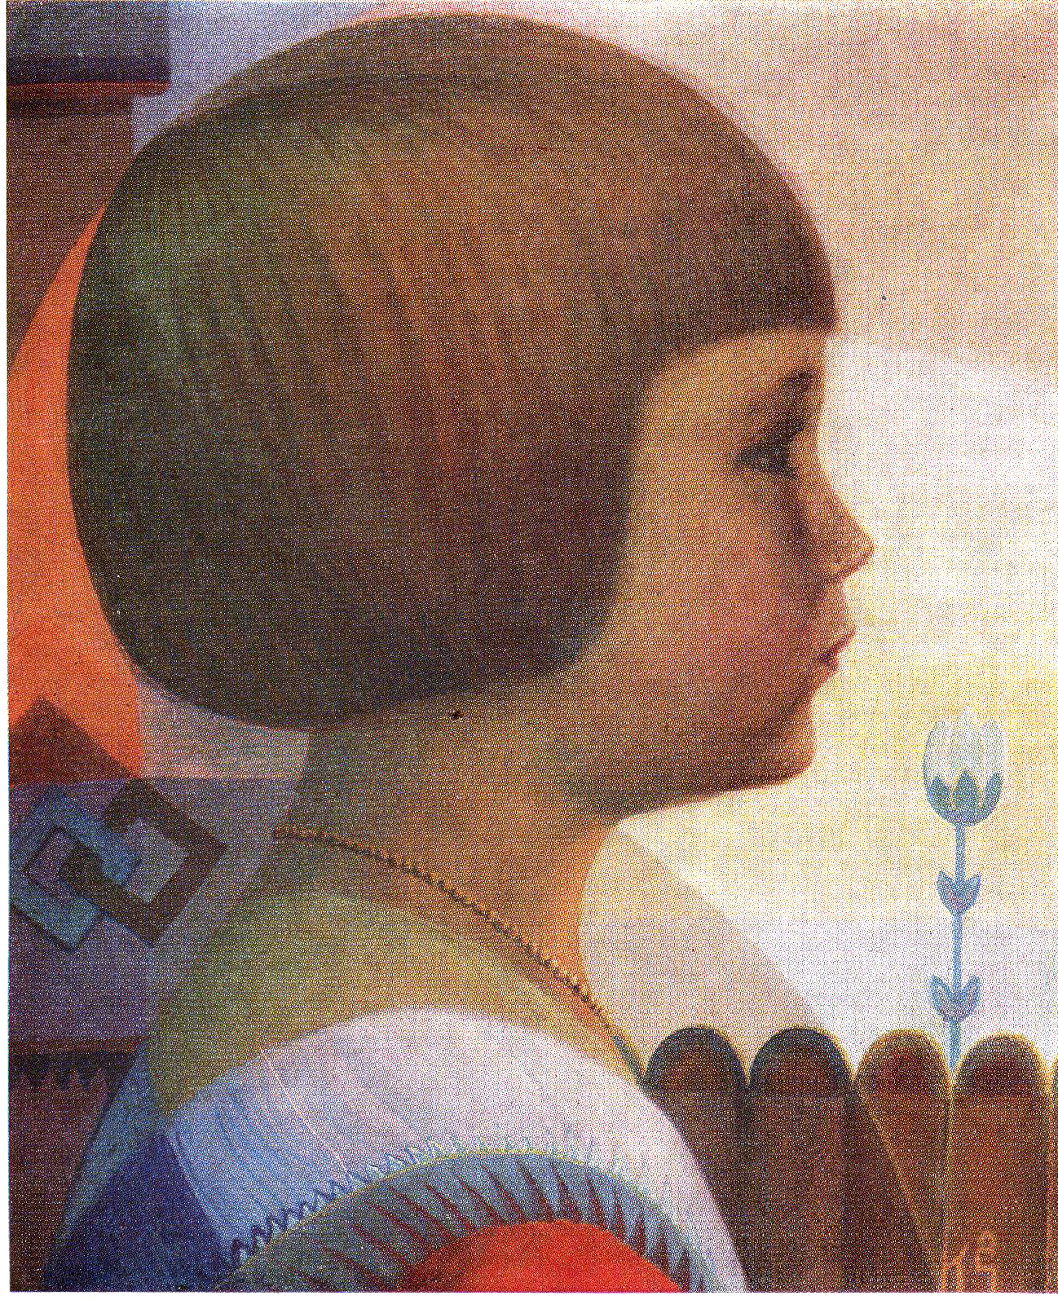    Казис Шимонис, живопись и книжная графика | Девочка. 1928